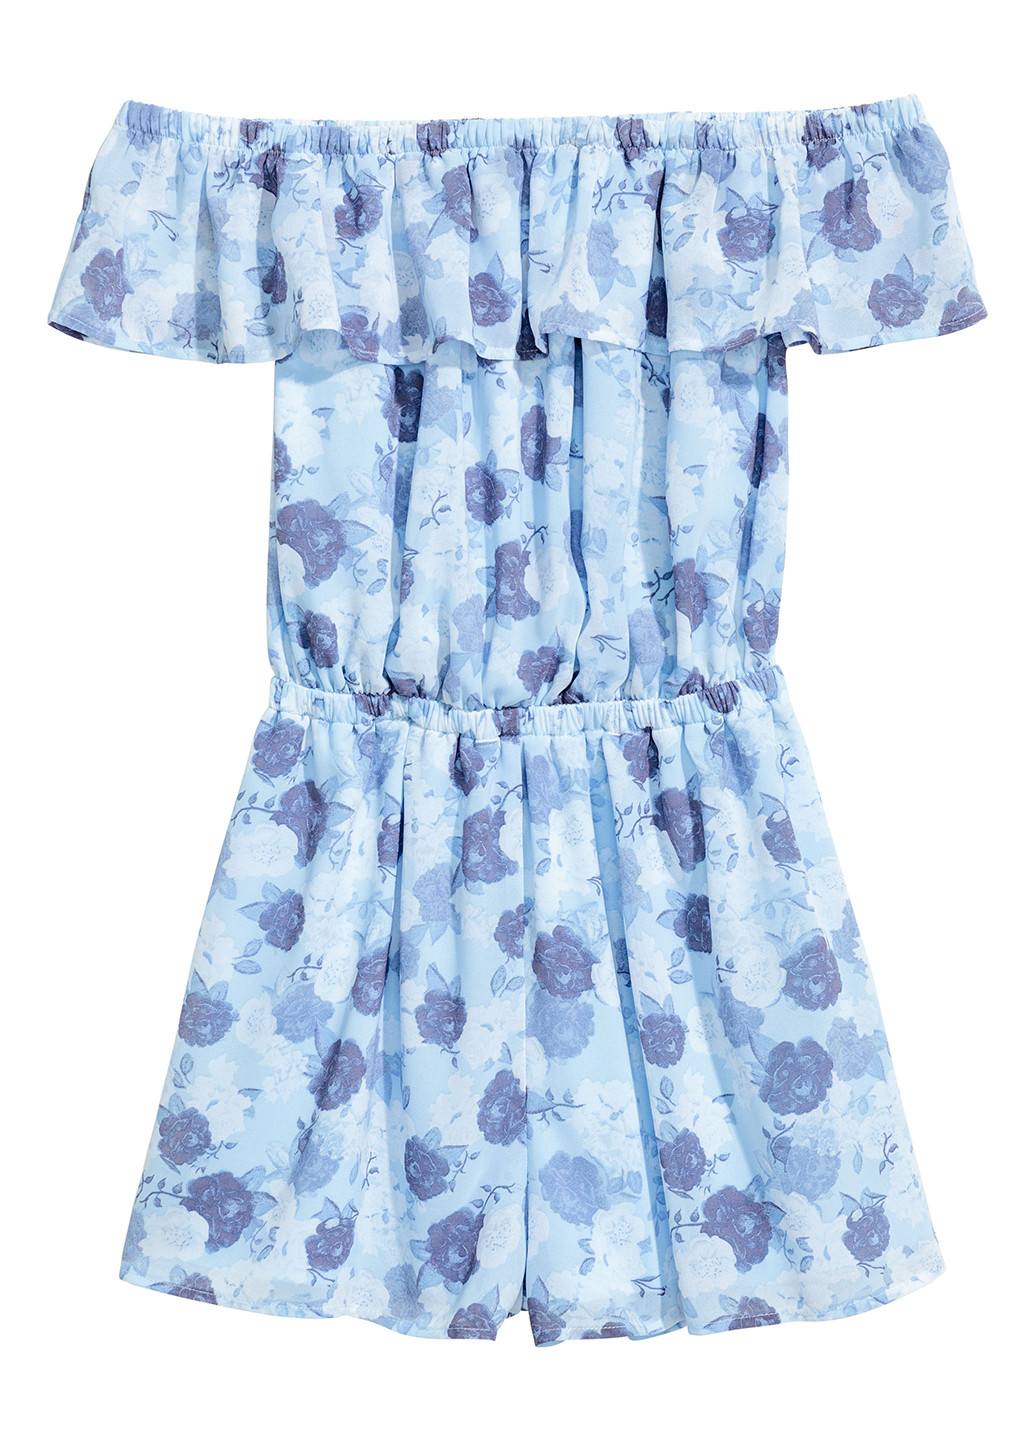 Комбинезон H&M комбинезон-шорты рисунок голубой кэжуал